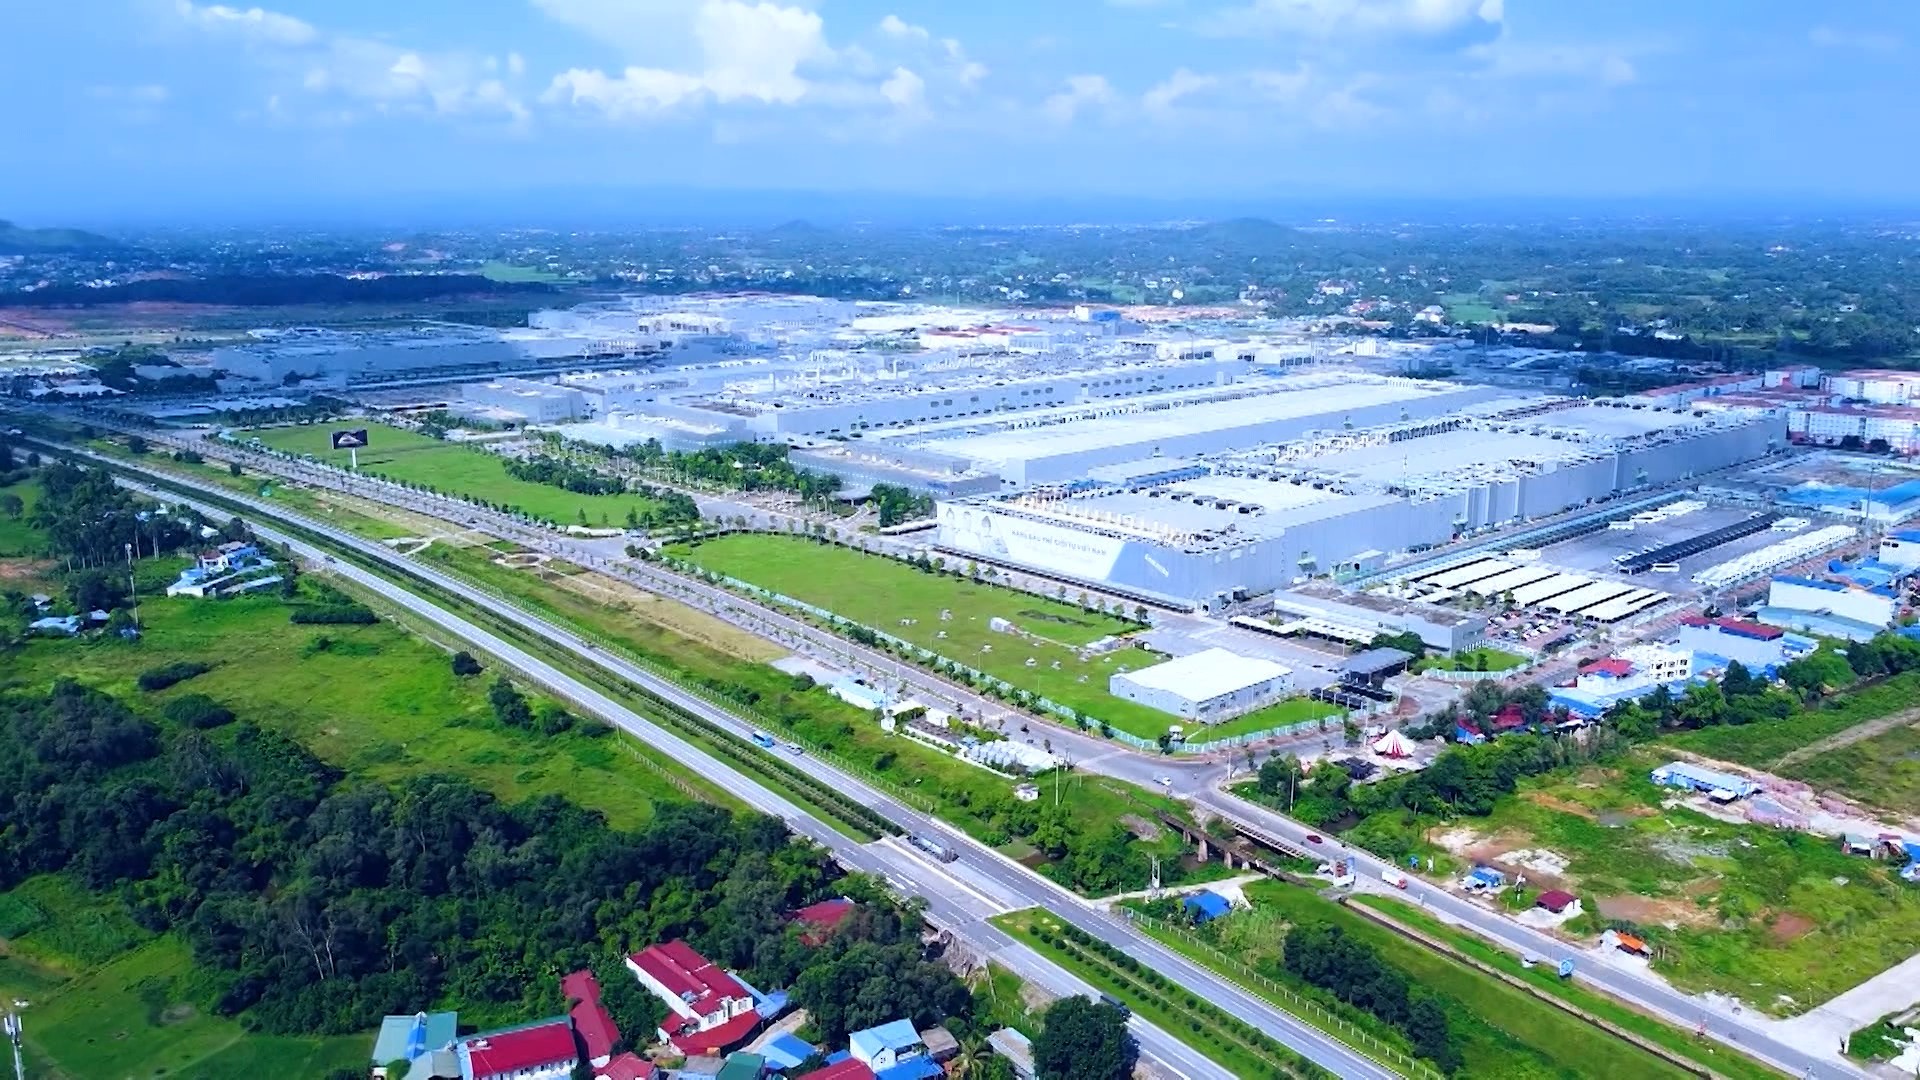 
Tỉnh Thái Nguyên có 5/7 khu công nghiệp được đầu tư hạ tầng theo hướng đồng bộ
